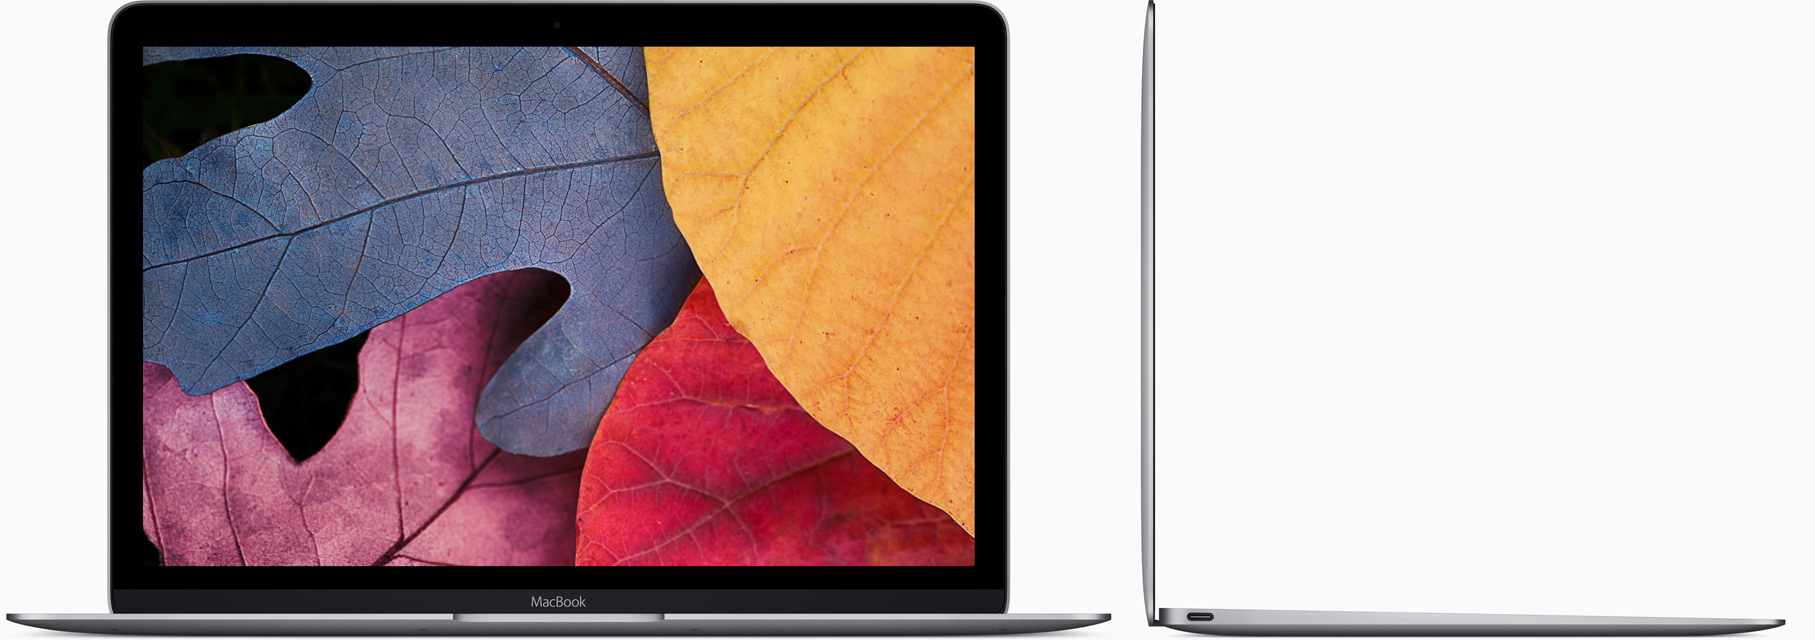 12inçlik yeni MacBook’ta geçen yıla göre neler değişti?